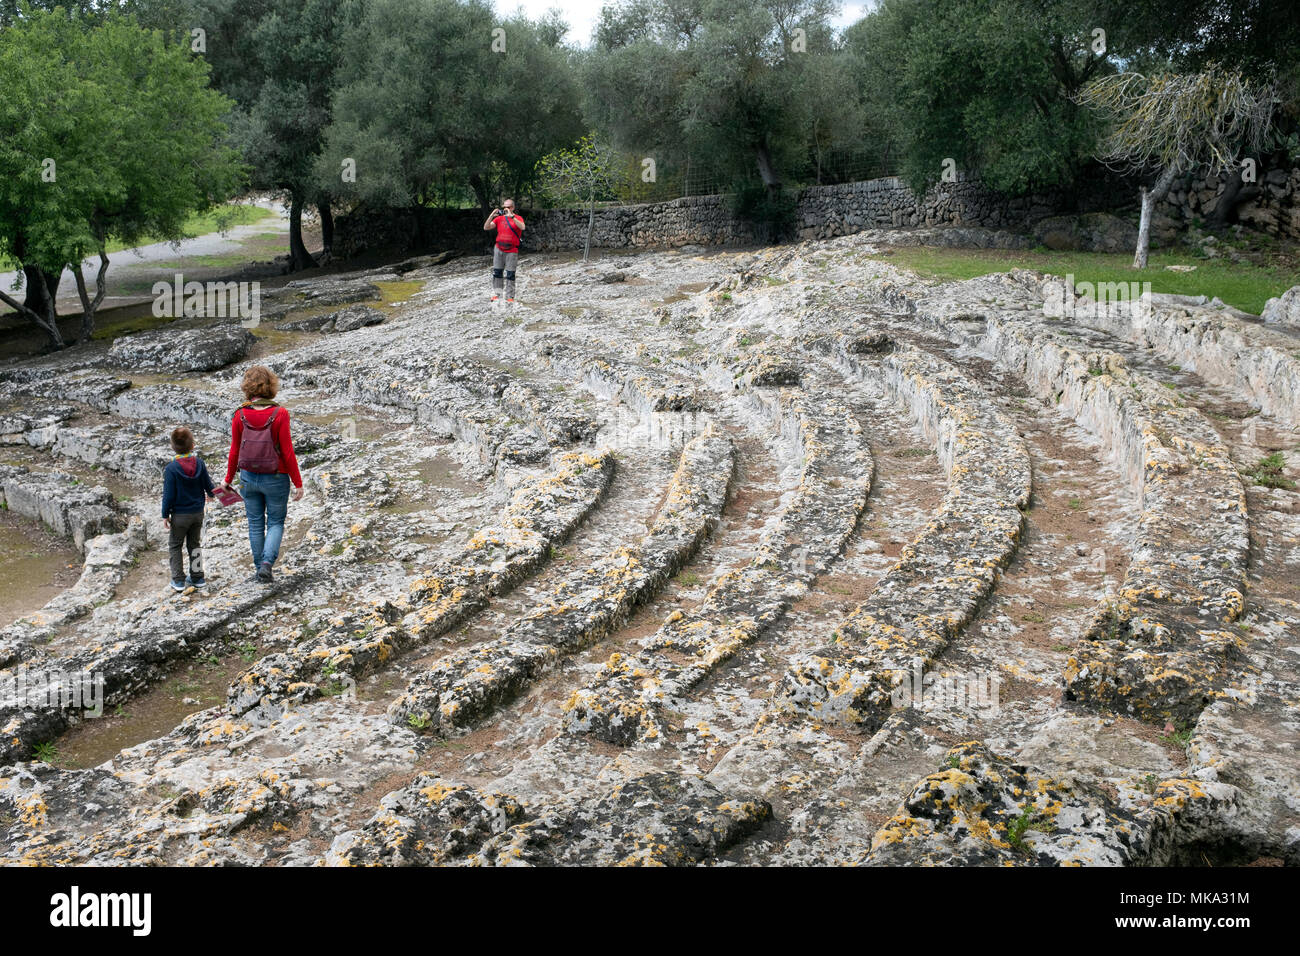 The Roman Amphitheatre in Alcudia, Mallorca, Spain - part of the Roman ruins of Pollentia. Stock Photo